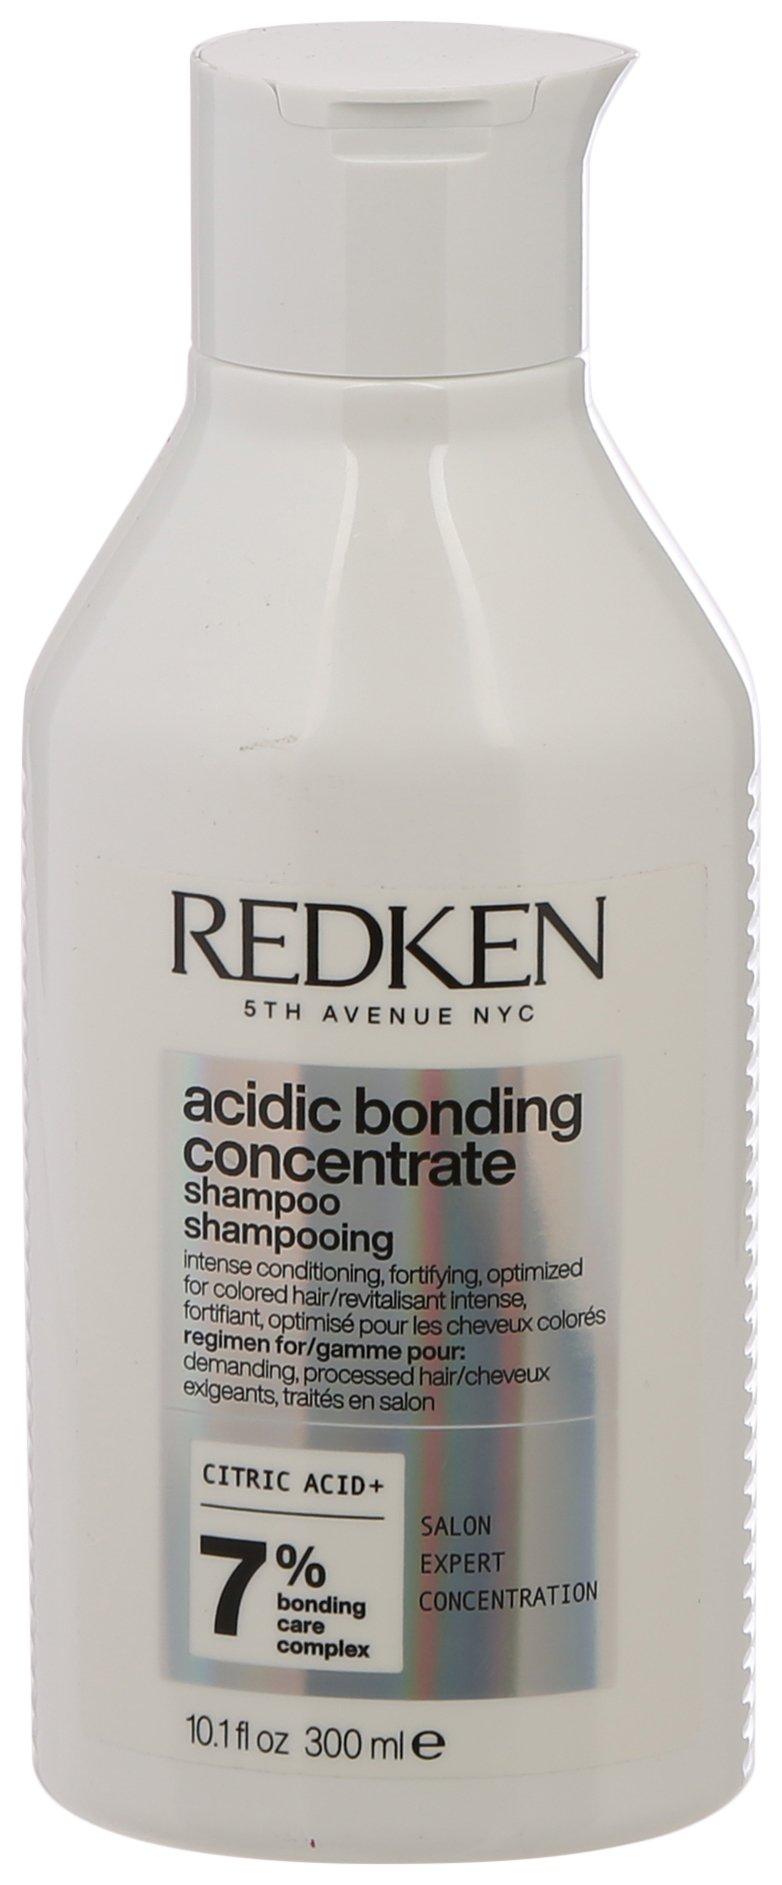 Redken Acidic Bonding Concentrate 10.1 Fl. Oz. Shampoo